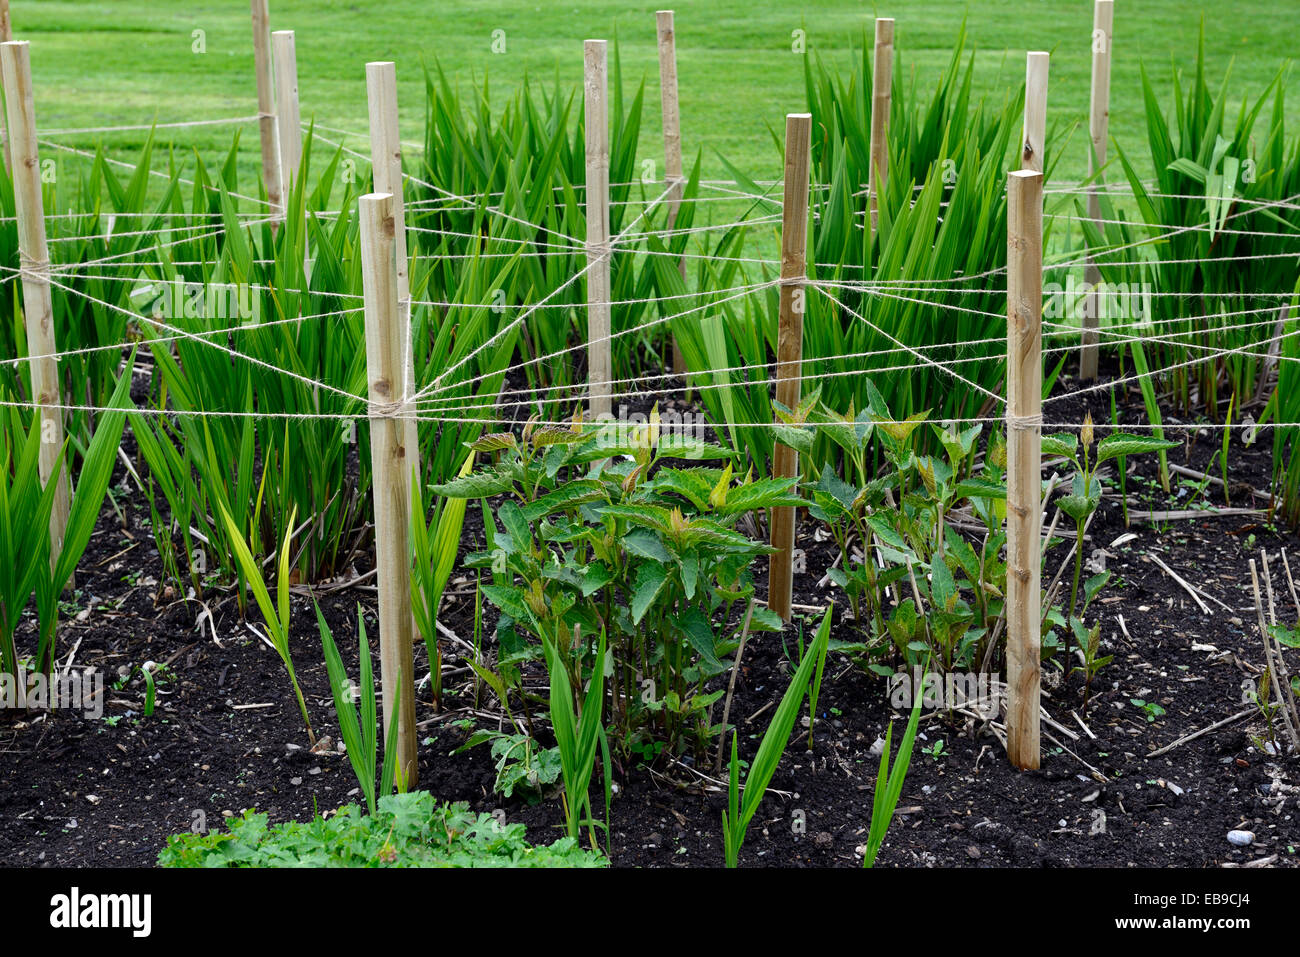 Holz Holzpfahl abgesteckt, dass String-Support unterstützt die Pflanze Pflanzen Rahmen Garten Gartenarbeit unterstützen Plan Planung RM Floral Stockfoto